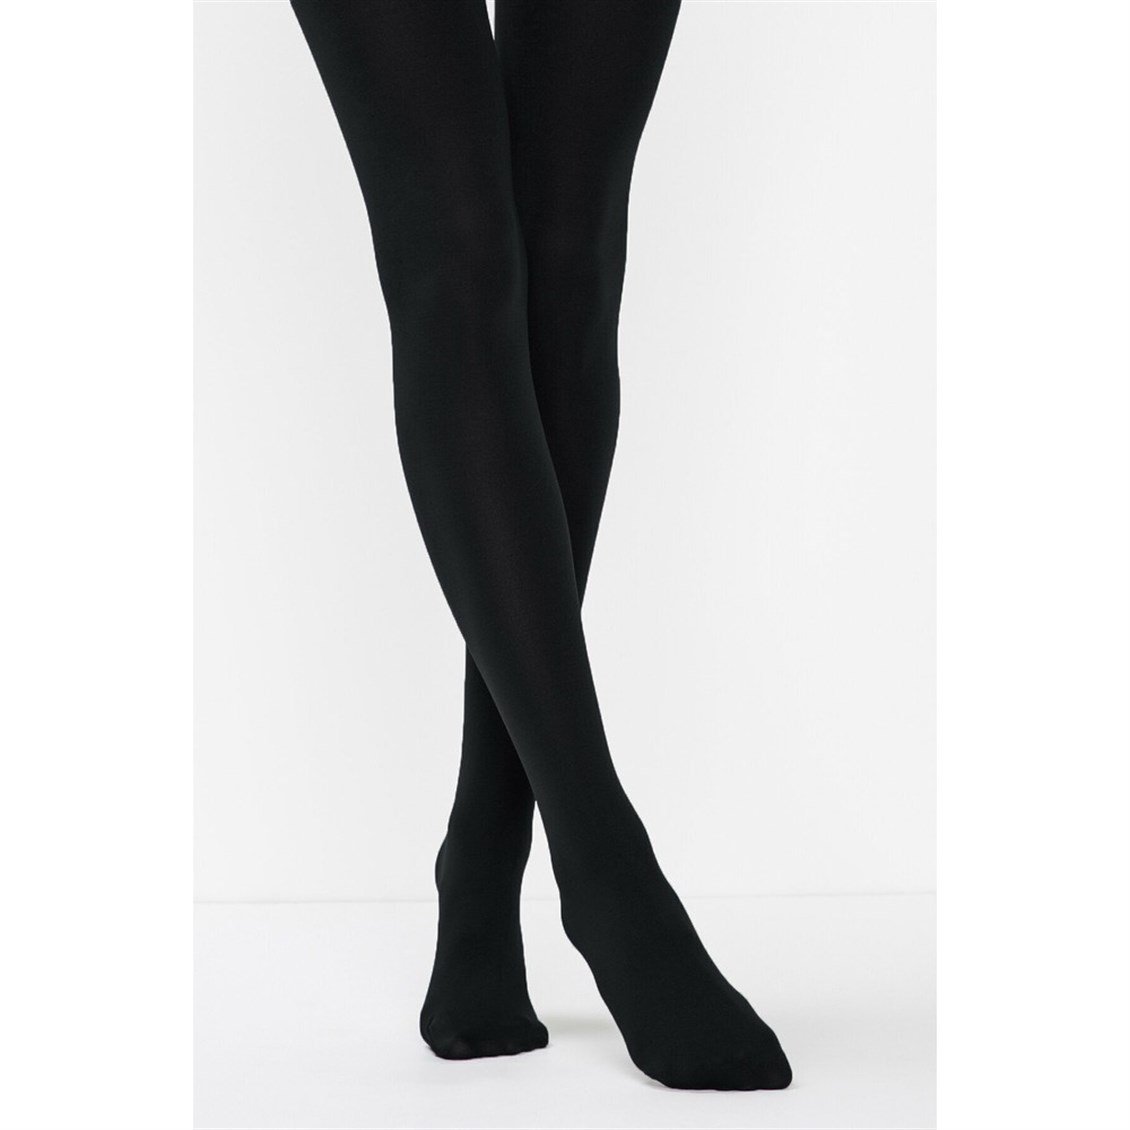 Penti Siyah Termal Külotlu Çorap 500-1 - Onur Market